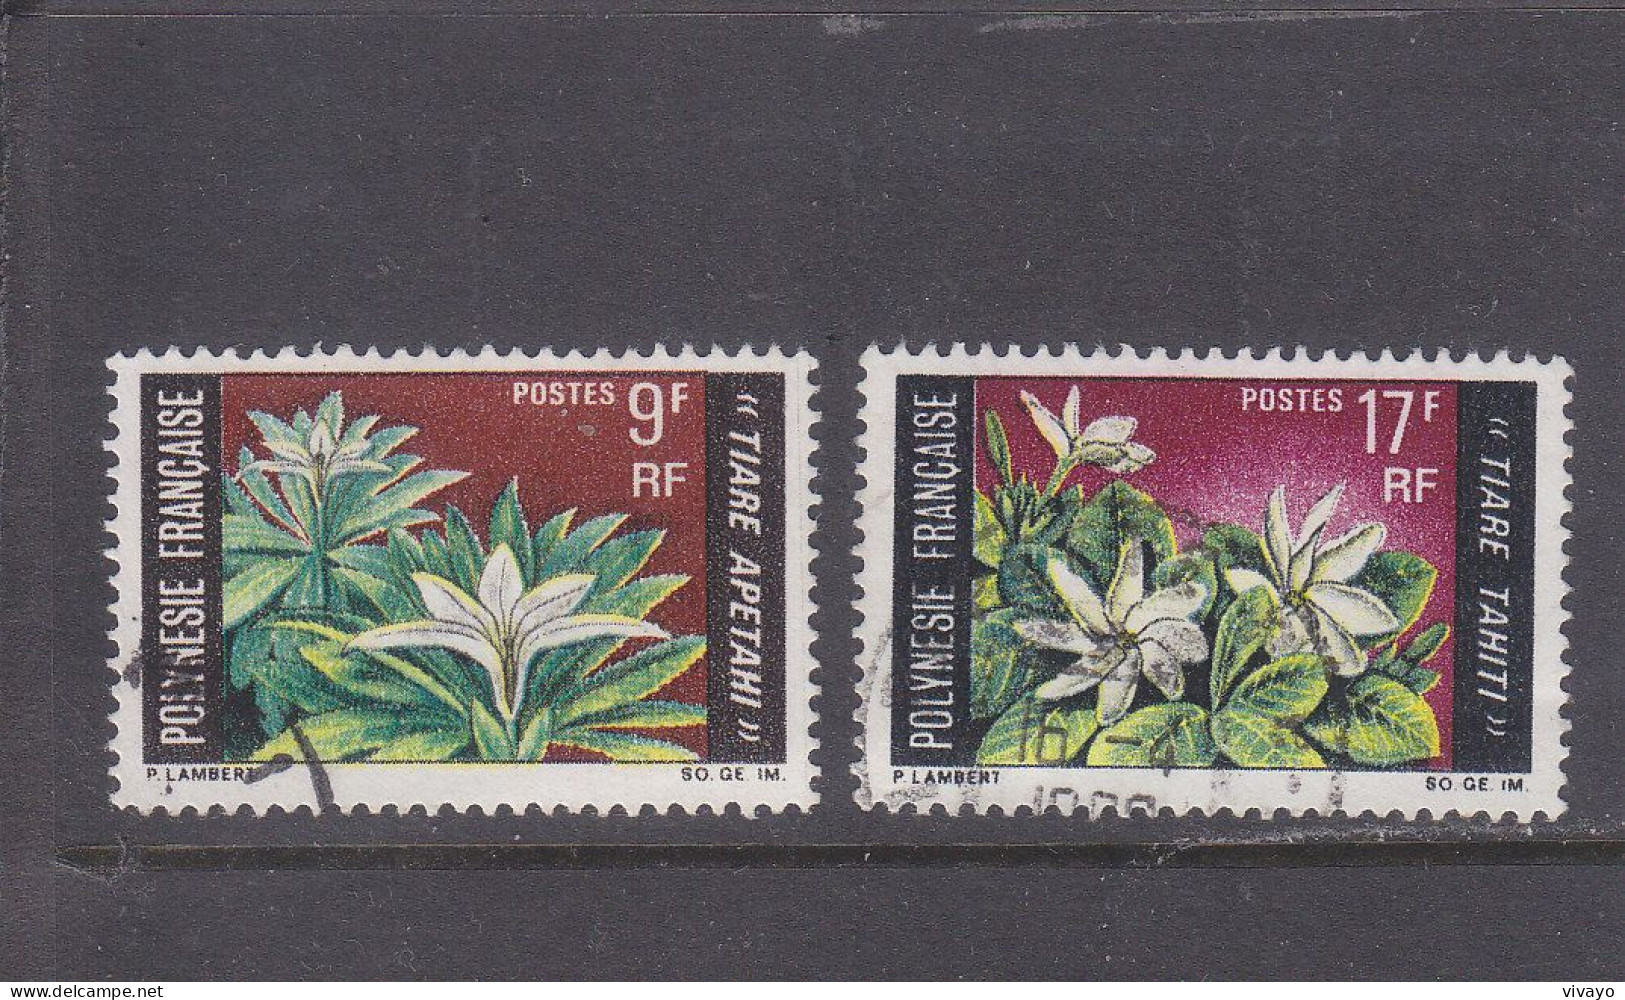 FRENCH POLYNESIA - POLYNESIE FRAN. - O / FINE CANCELLED - 1969 - LOCAL FLOWERS - Yv. 64/65  - Mi. 90/91 - Oblitérés